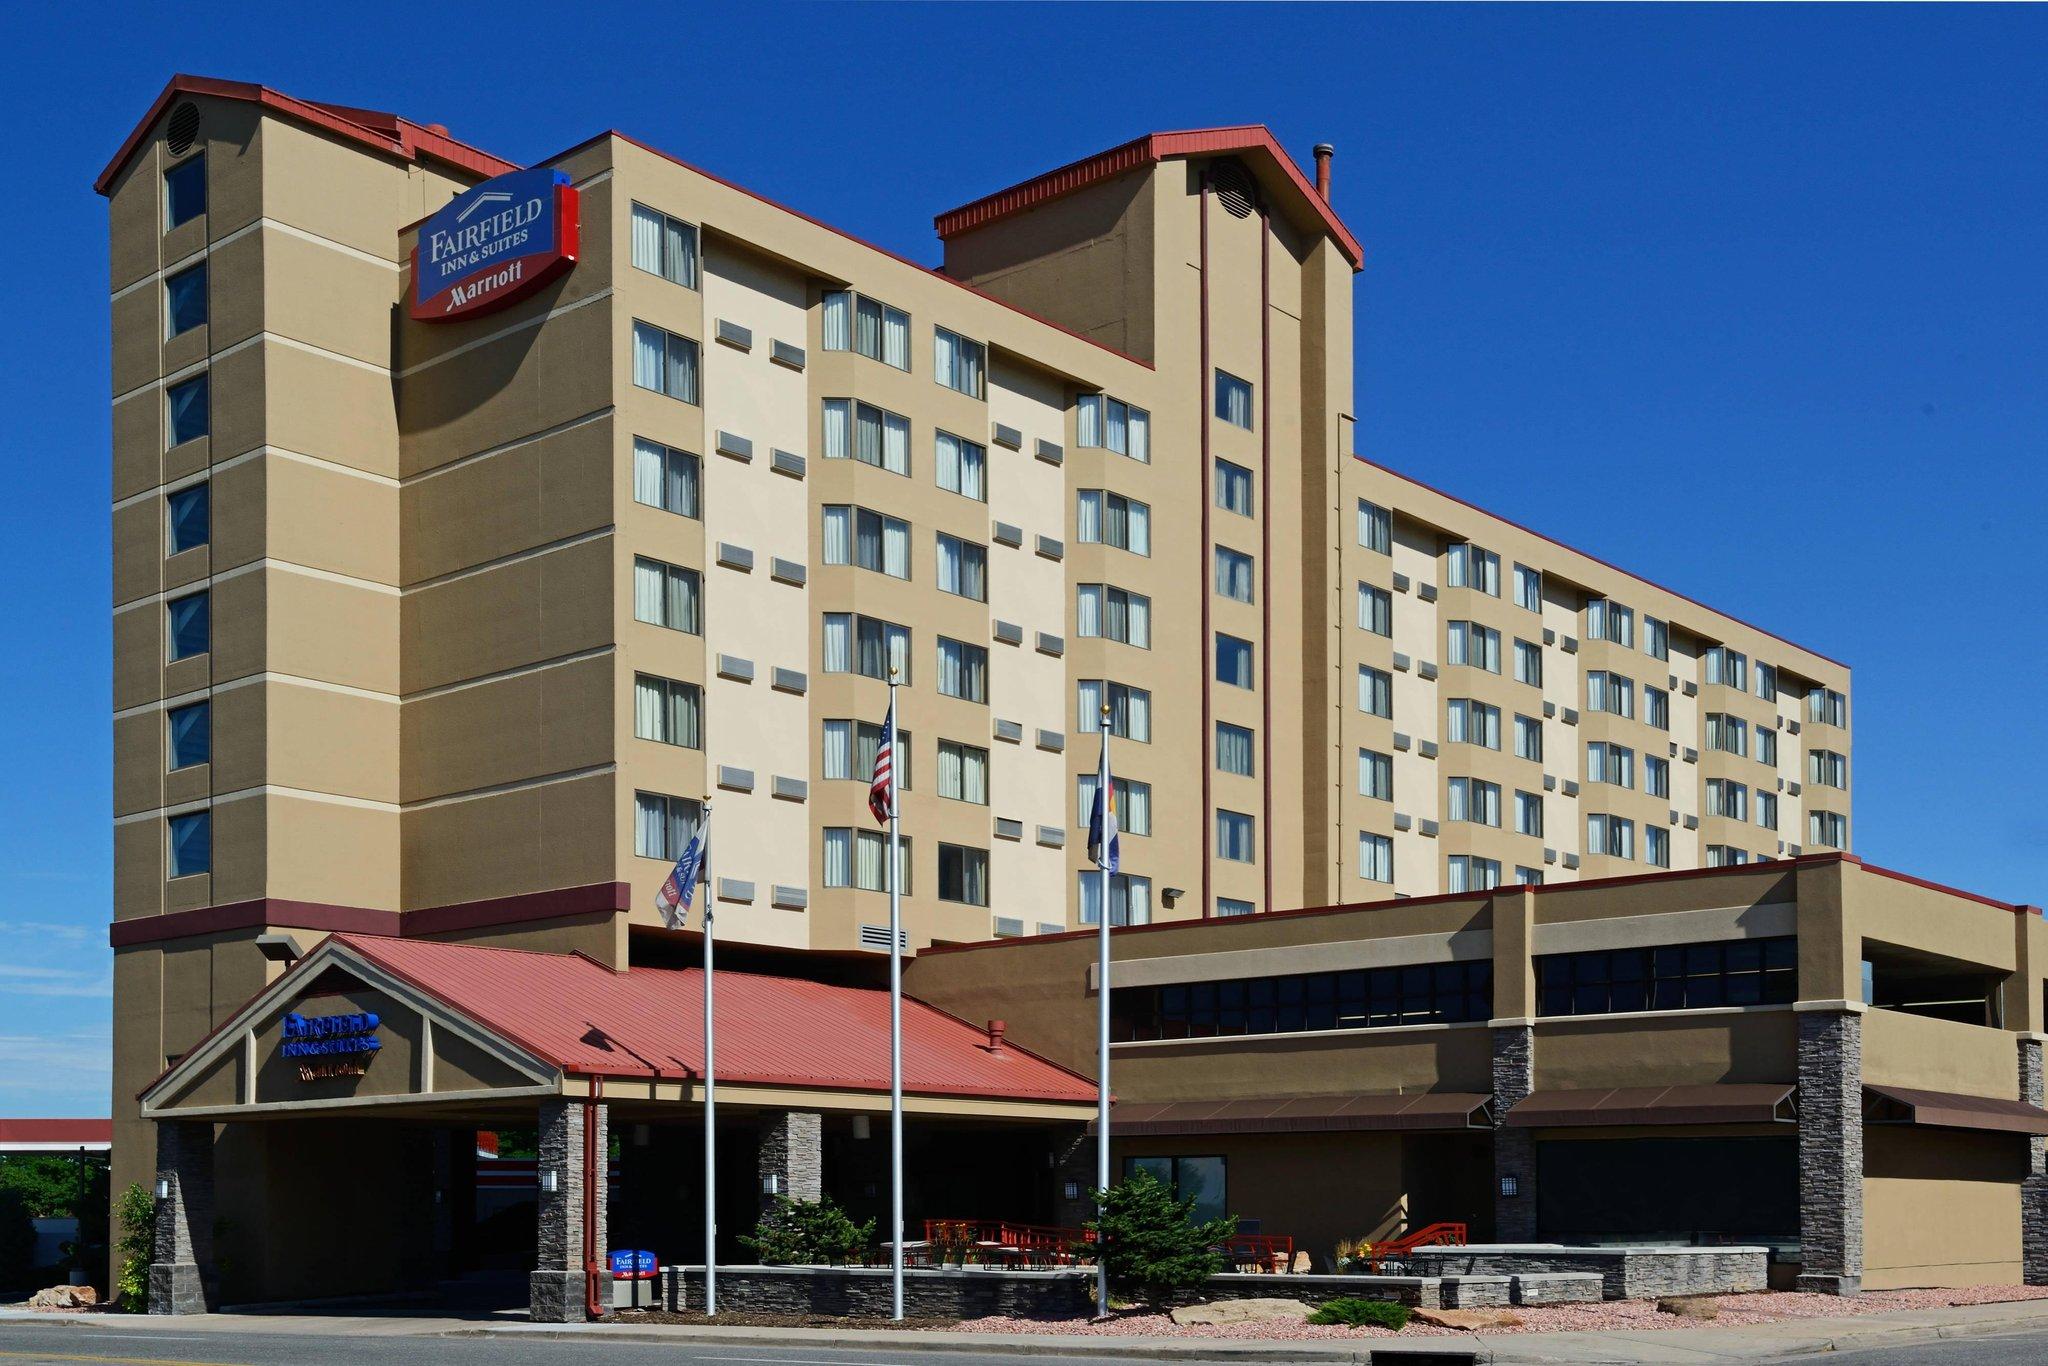 Fairfield Inn & Suites Denver Cherry Creek in Denver, CO